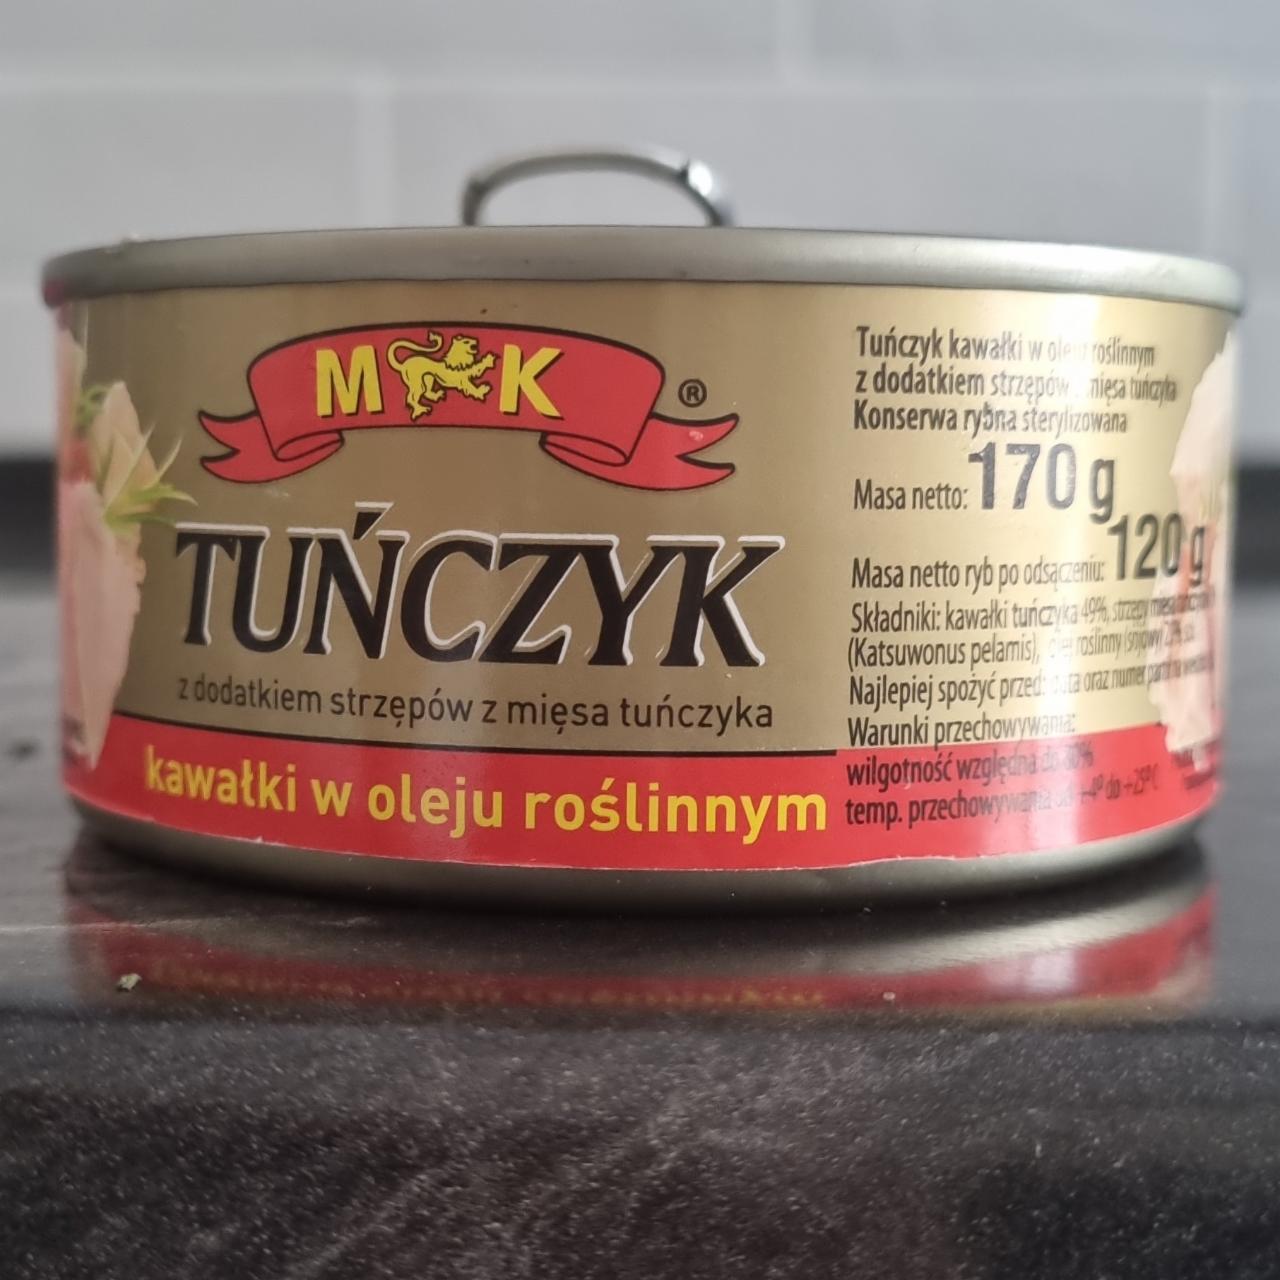 Fotografie - Tuńczyk kawałki w oleju roślinnym M&K